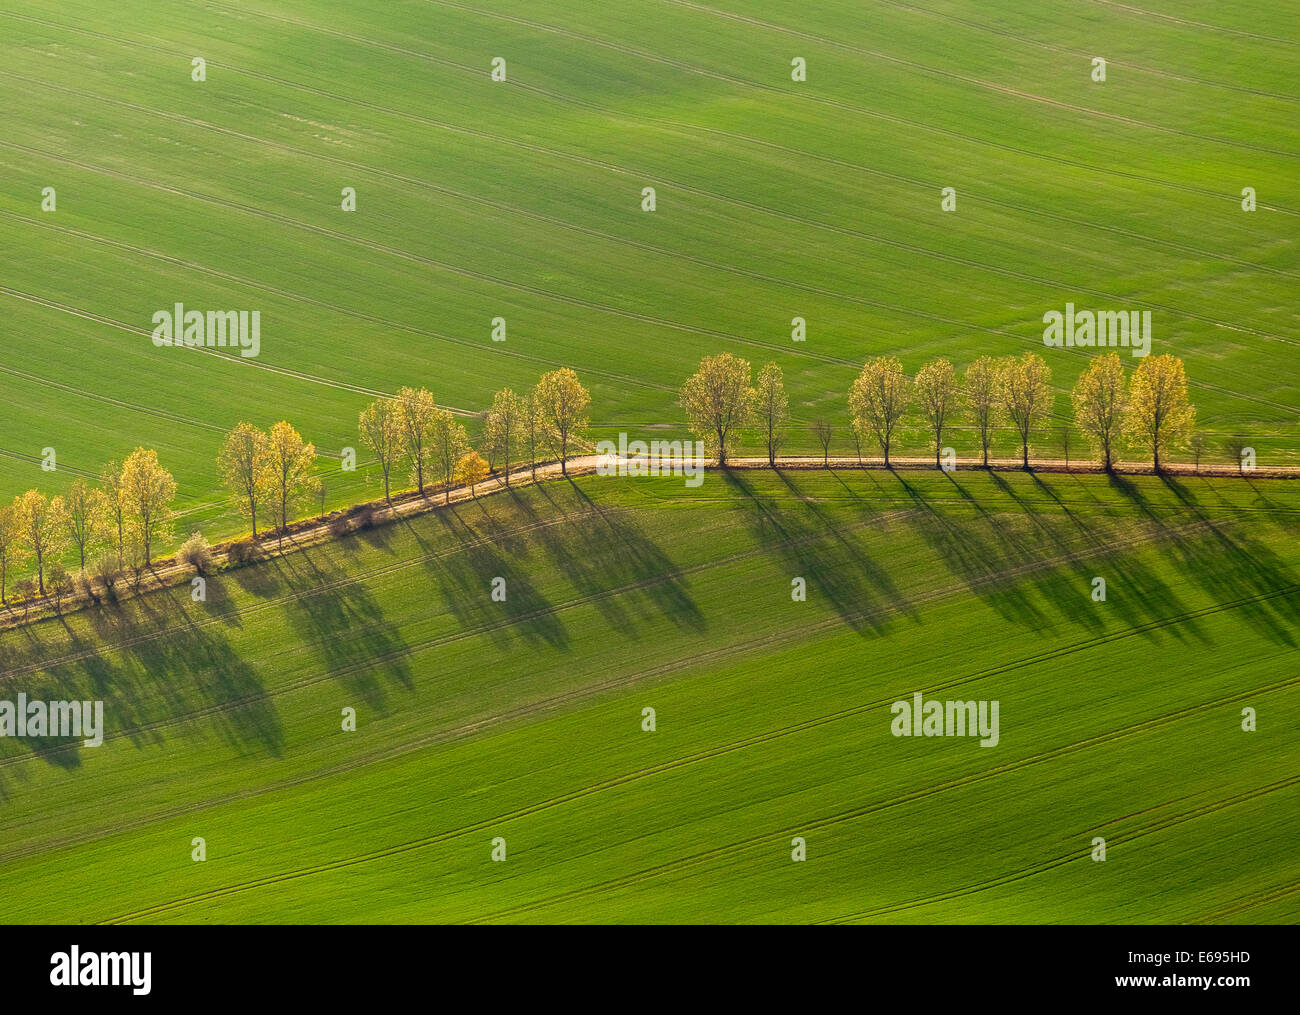 Vista aerea, country road, viale alberato tra il verde dei campi, Stavenhagen, Meclemburgo-Pomerania, Germania Foto Stock